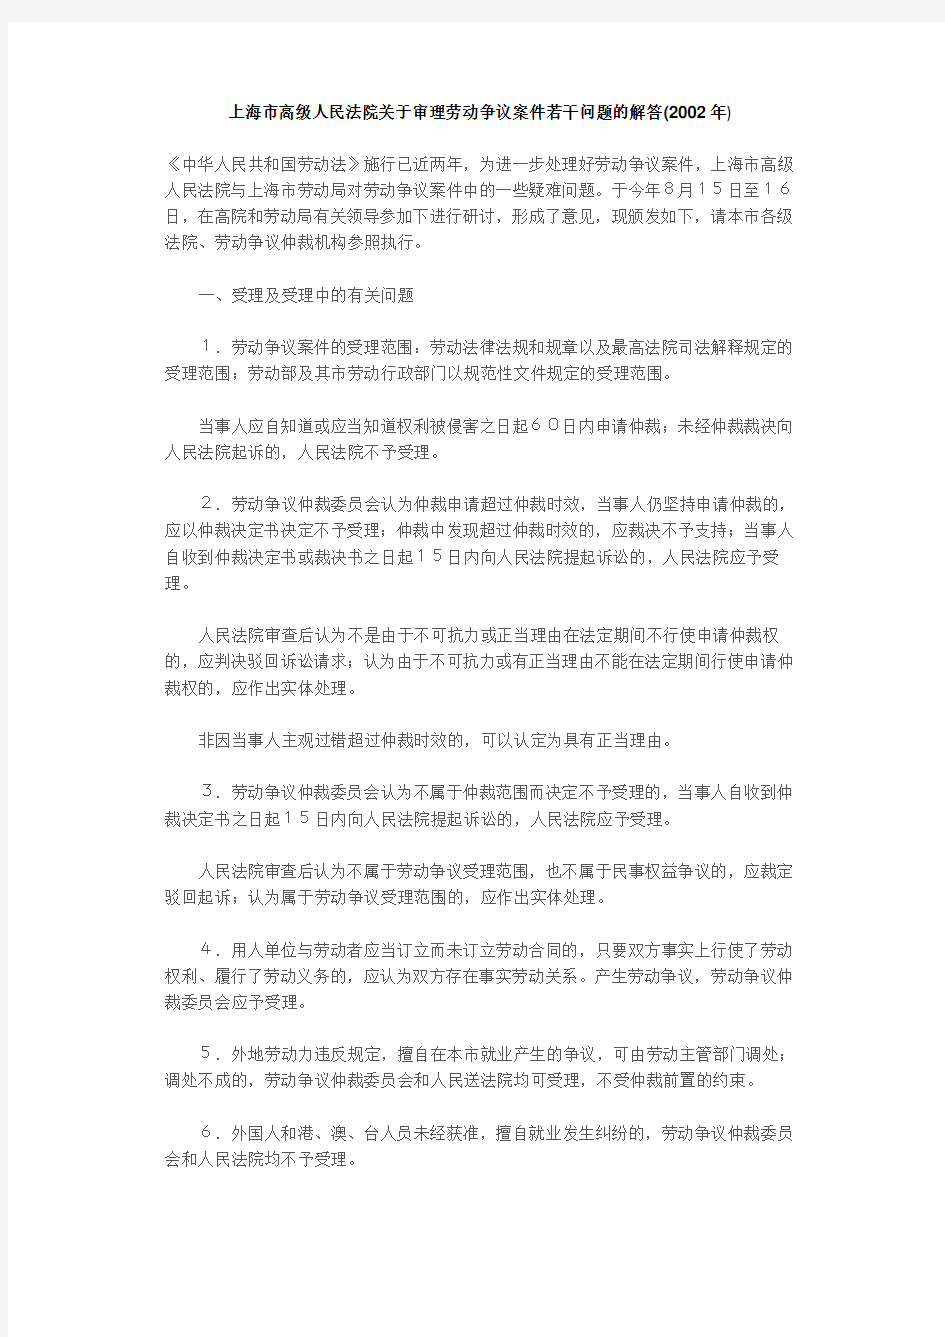 上海市高级人民法院关于审理劳动争议案件若干问题的解答